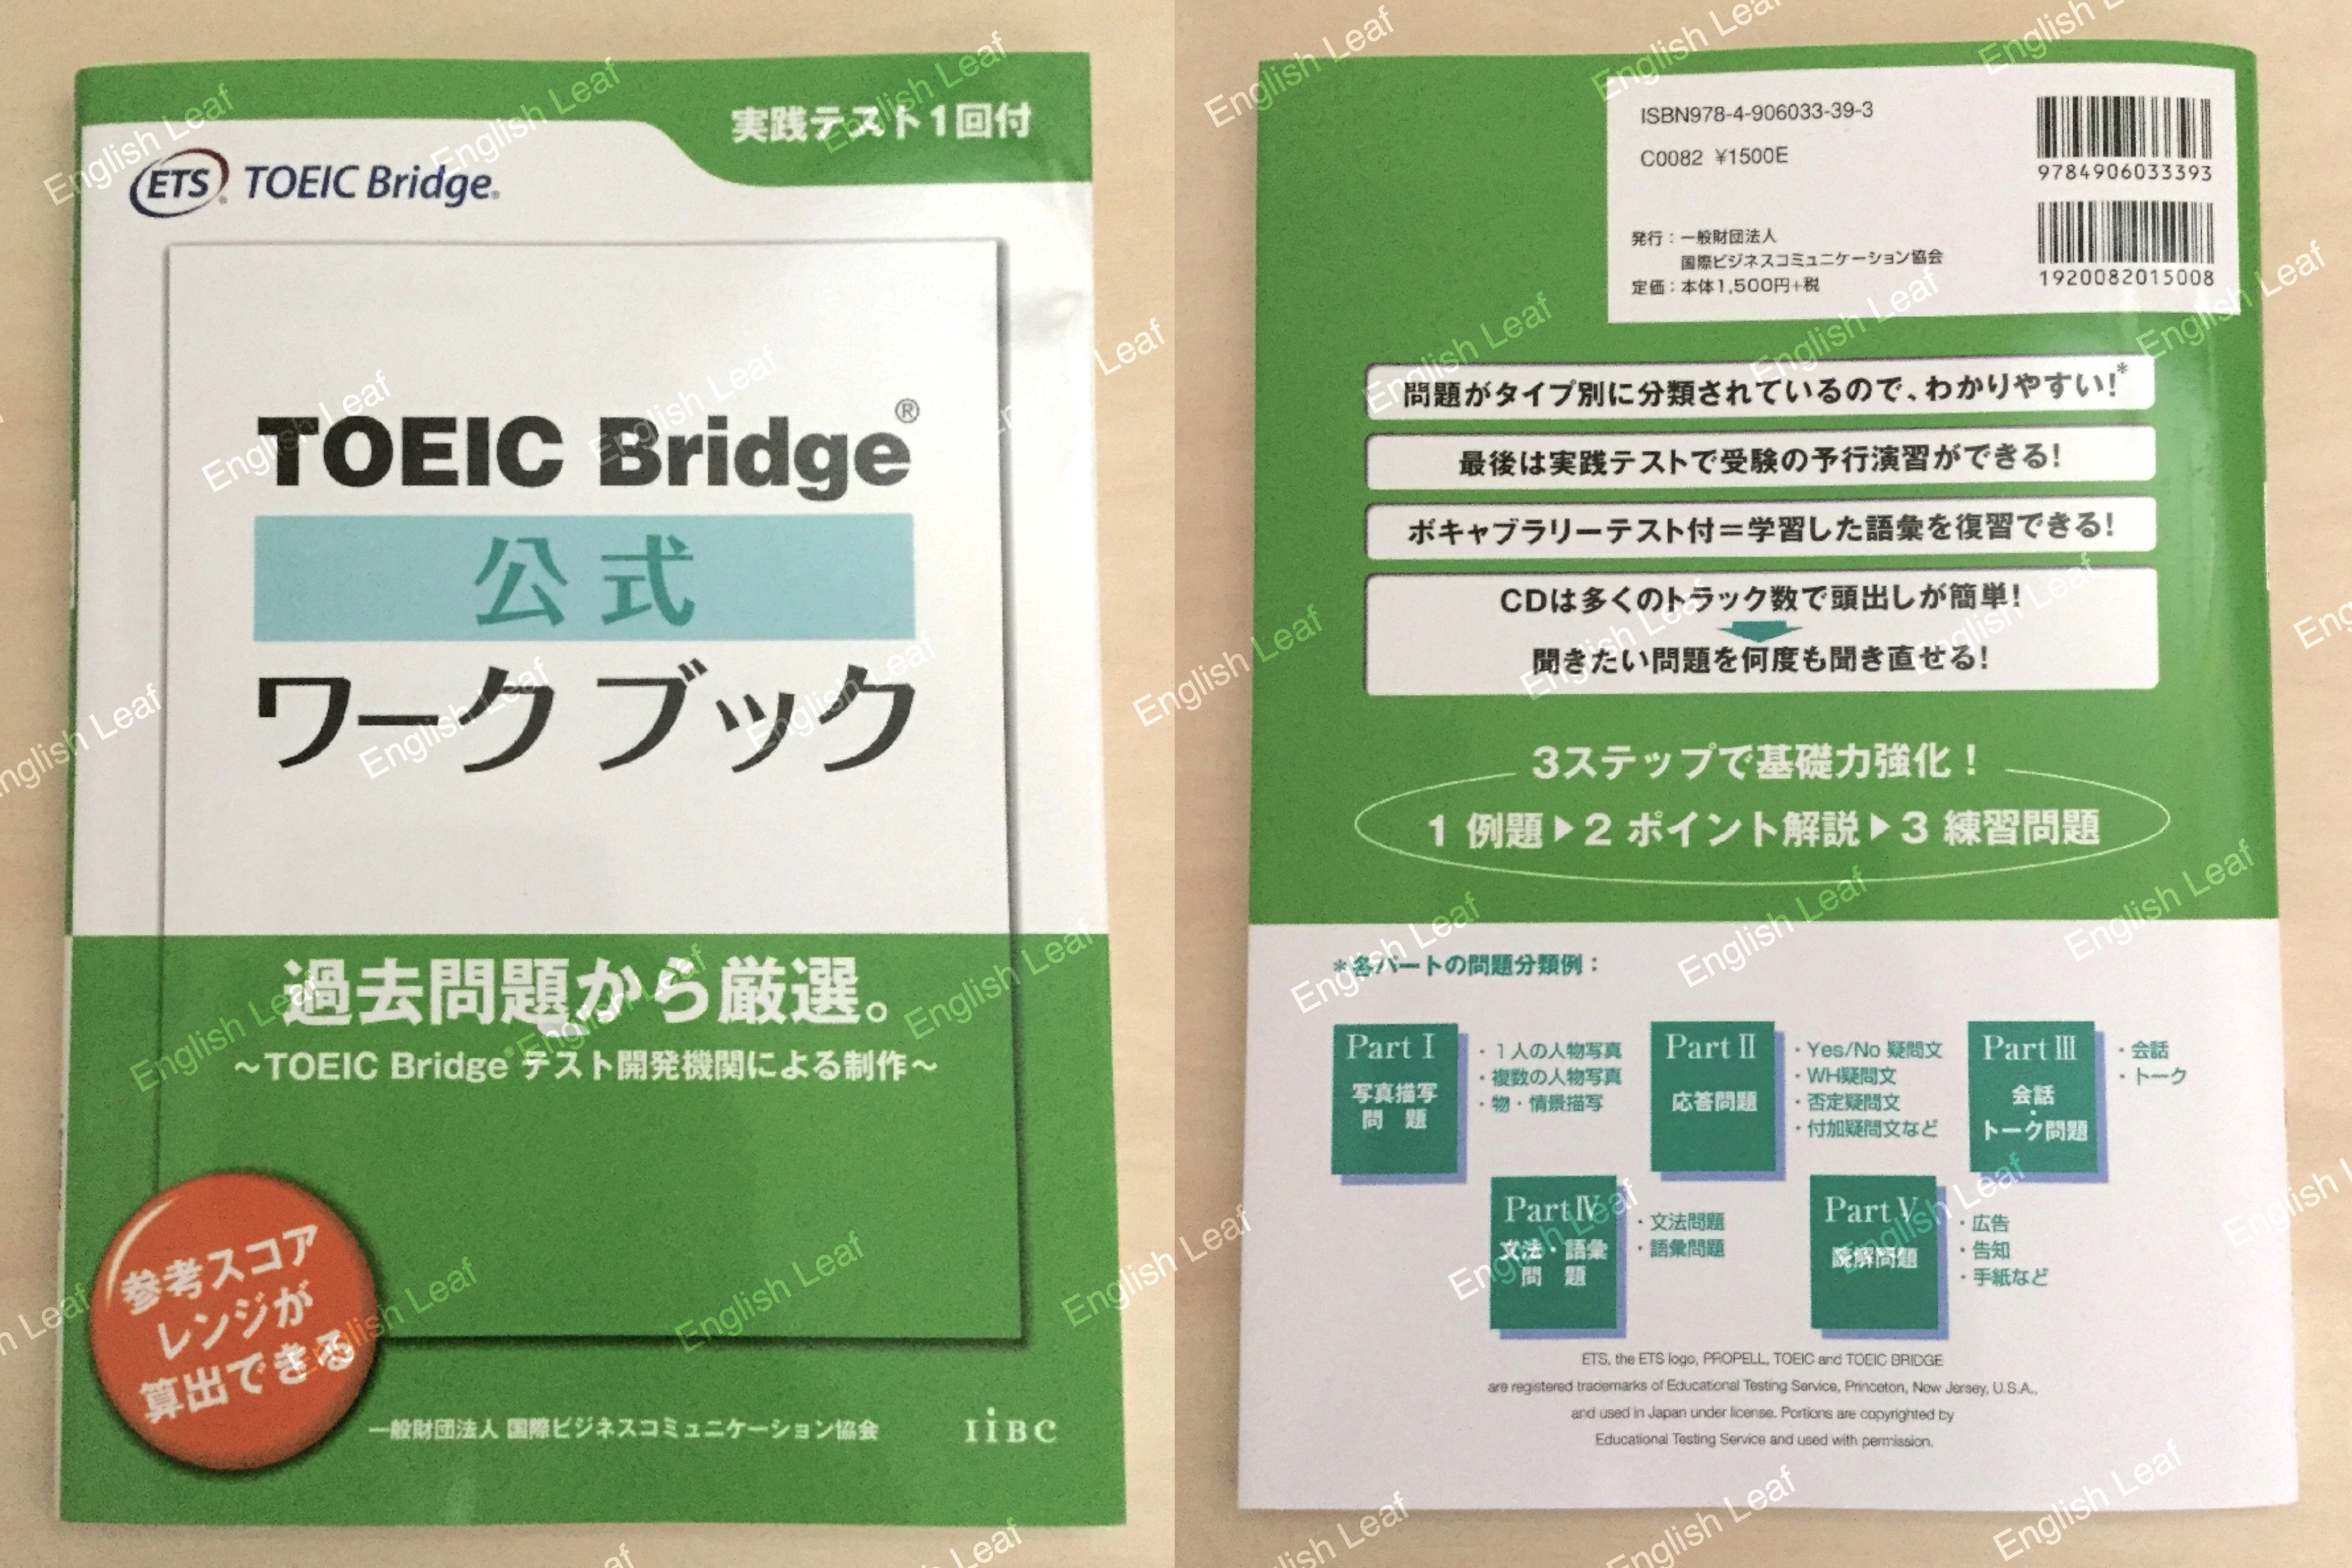 中身/使い方】TOEIC Bridge公式ワークブック - レビュー | English Leaf